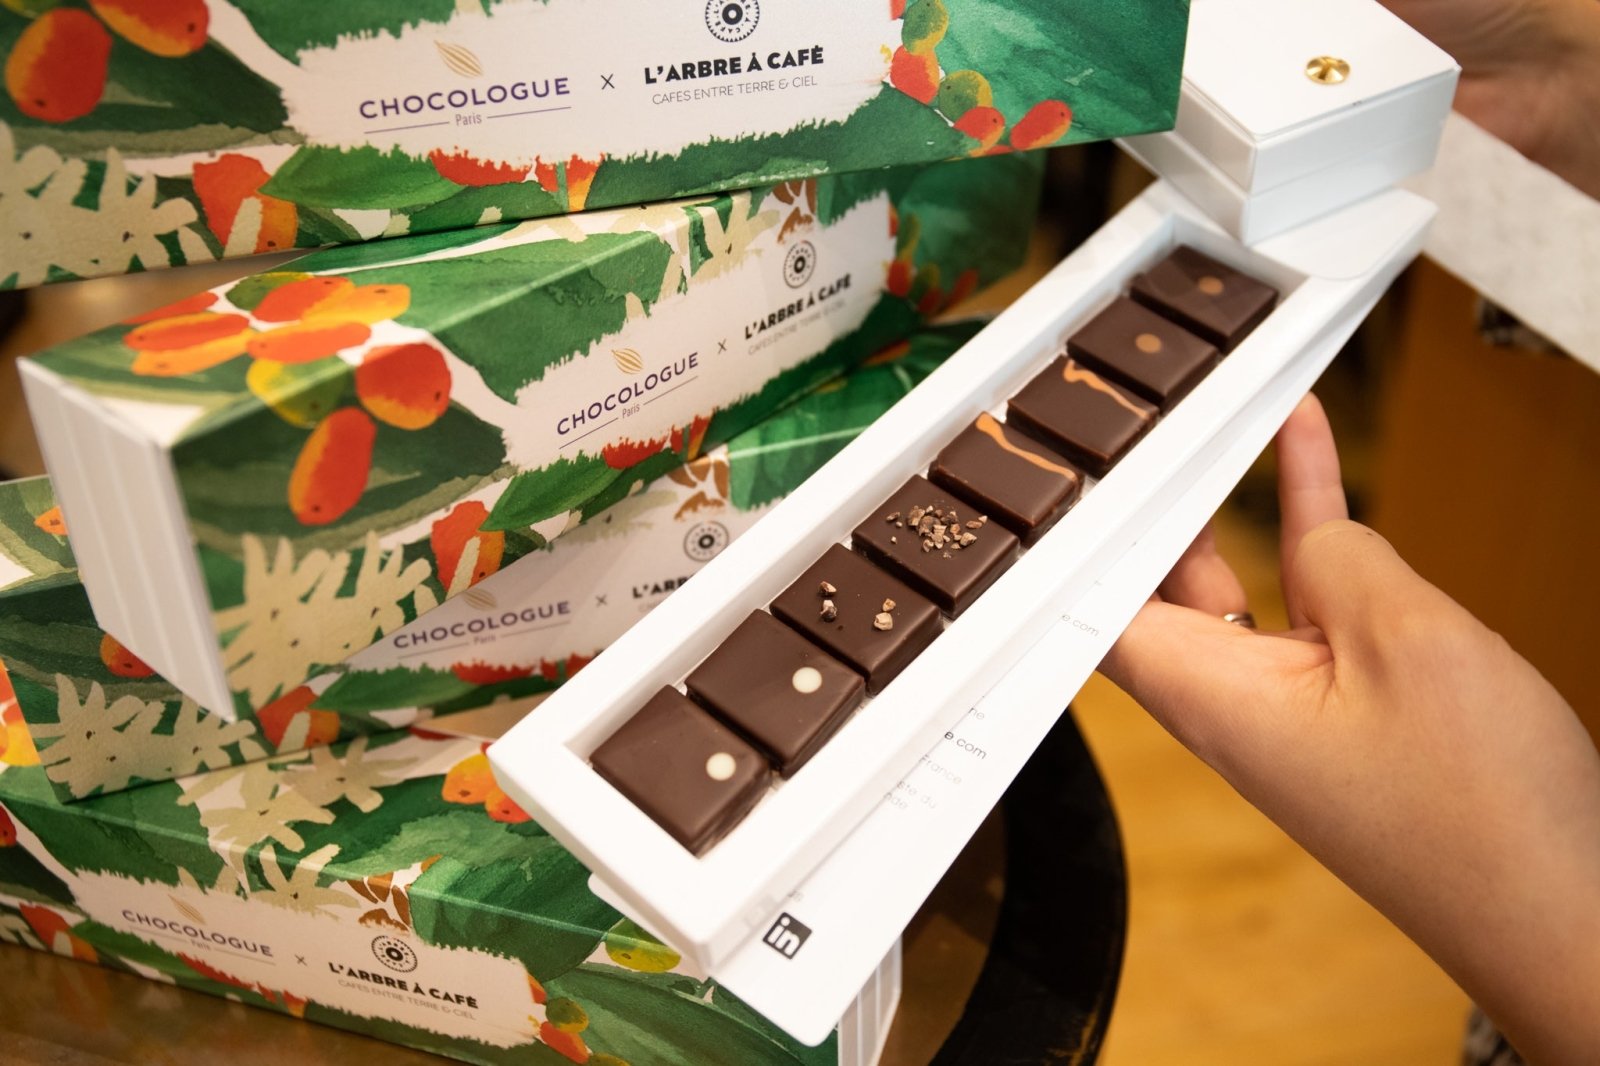 Nouveau : Nuancier chocolat café en partenariat avec Chocologue Paris - L'Arbre à Café